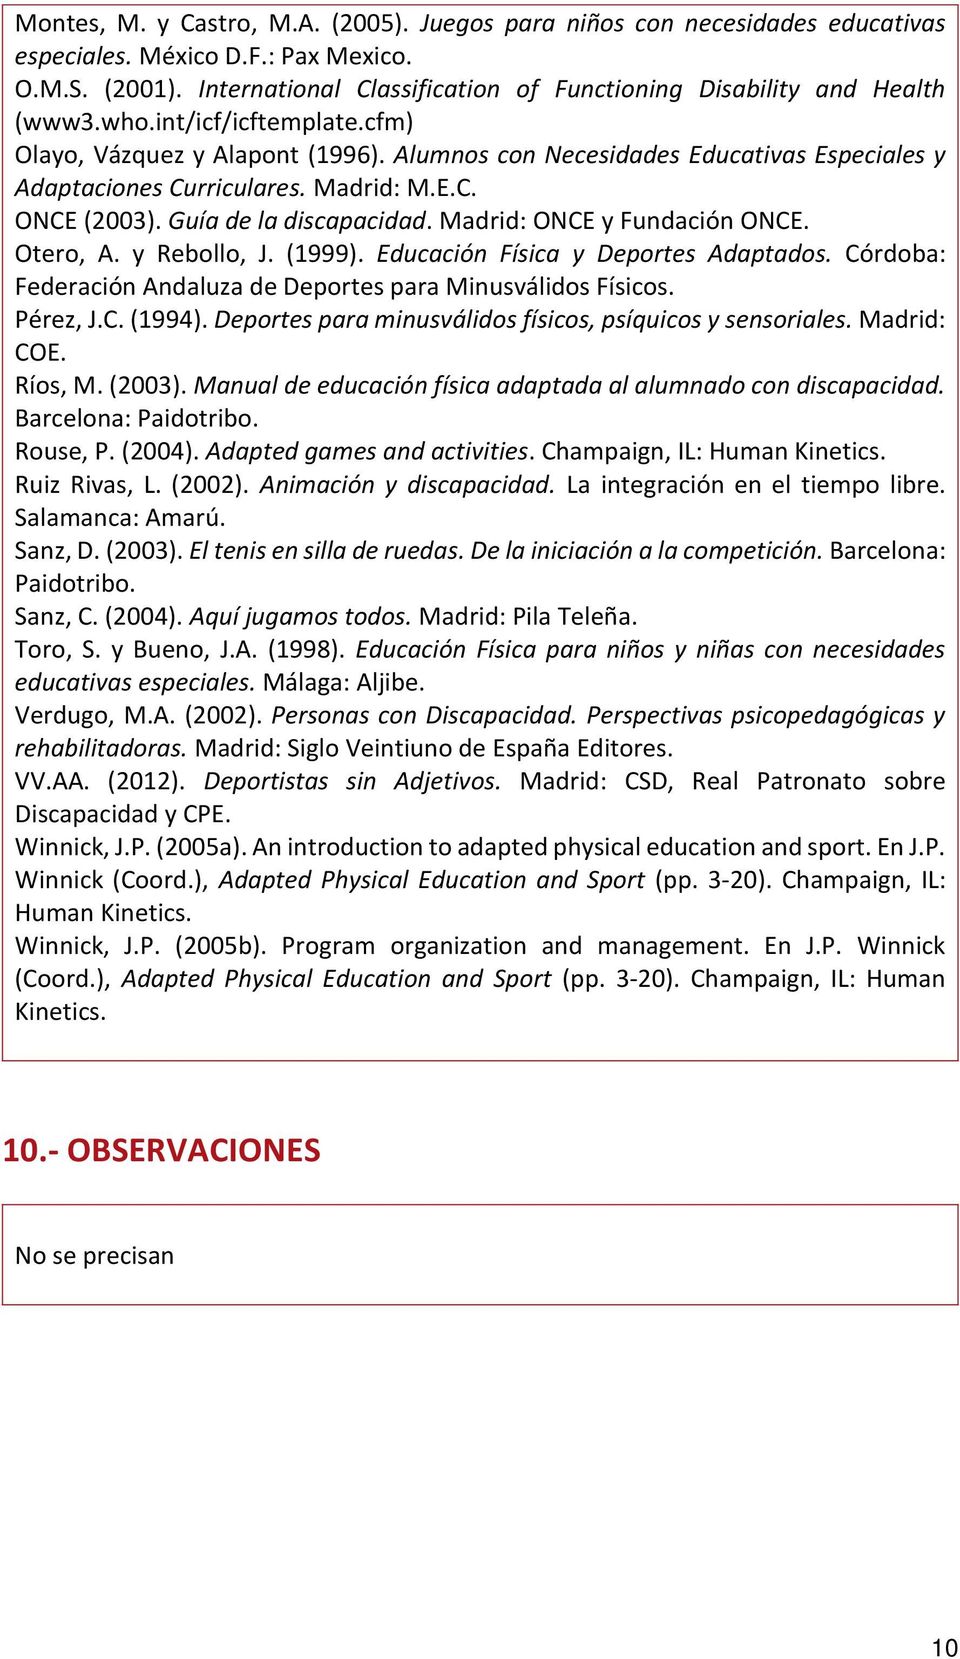 Alumnos con Necesidades Educativas Especiales y Adaptaciones Curriculares. Madrid: M.E.C. ONCE (2003). Guía de la discapacidad. Madrid: ONCE y Fundación ONCE. Otero, A. y Rebollo, J. (1999).